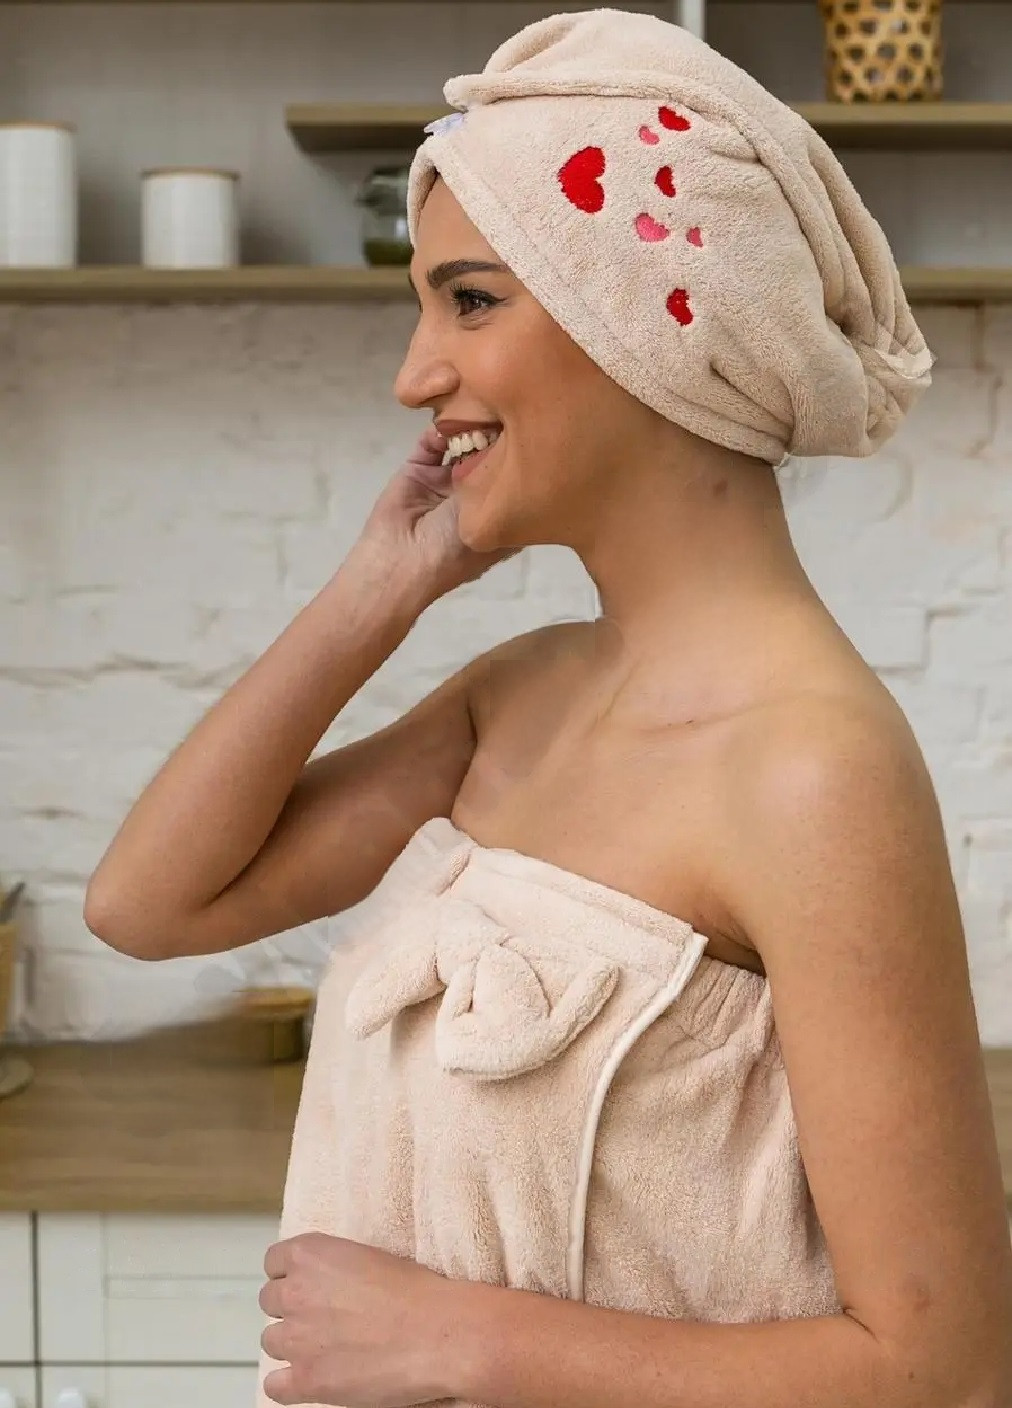 Unbranded женский набор 2 в 1 для бани сауны полотенце халат на резинке чалма тюрбан на голову микрофибра (474282-prob) сердечки кремовый сердечки бежевый производство -